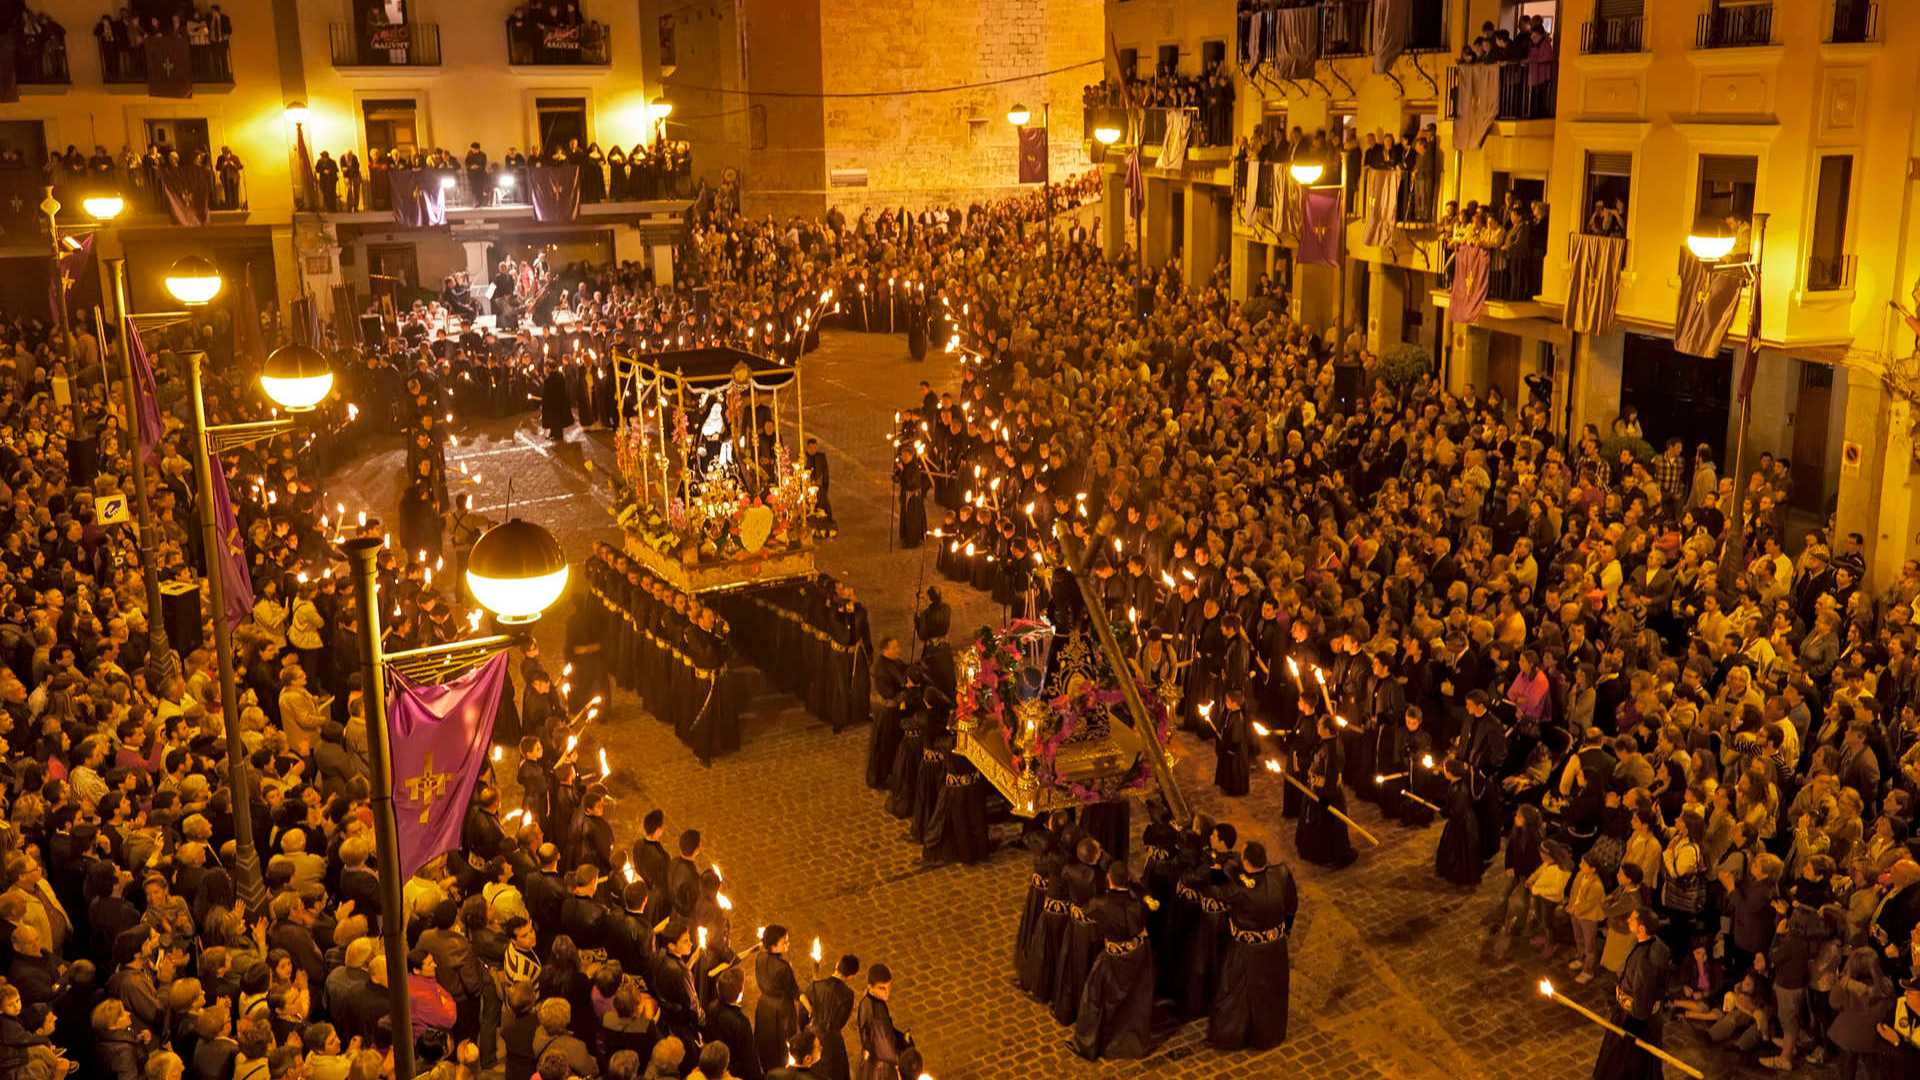 traditions de la semaine sainte dans la région de Valencia
visiter la région de Valencia pendant la semaine sainte